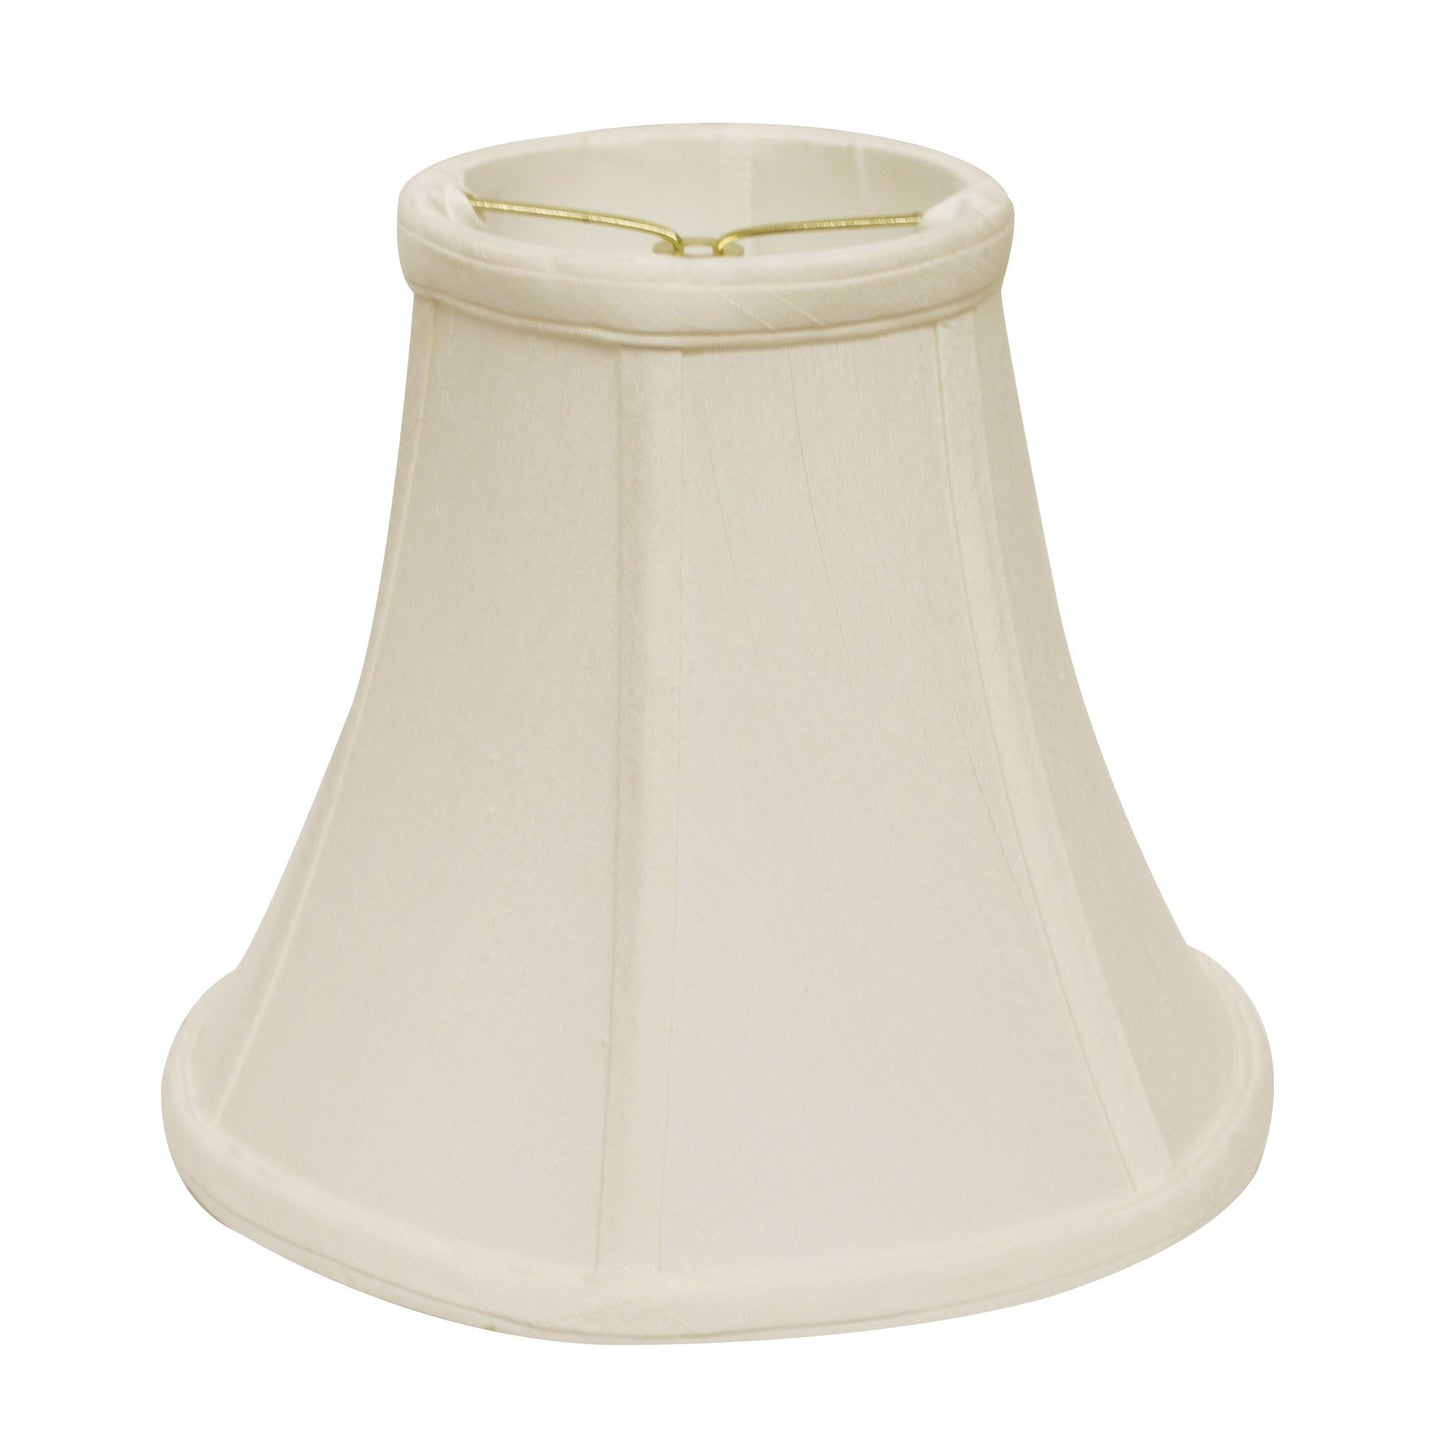 8" White Premium Bell Monay Shantung Lampshade